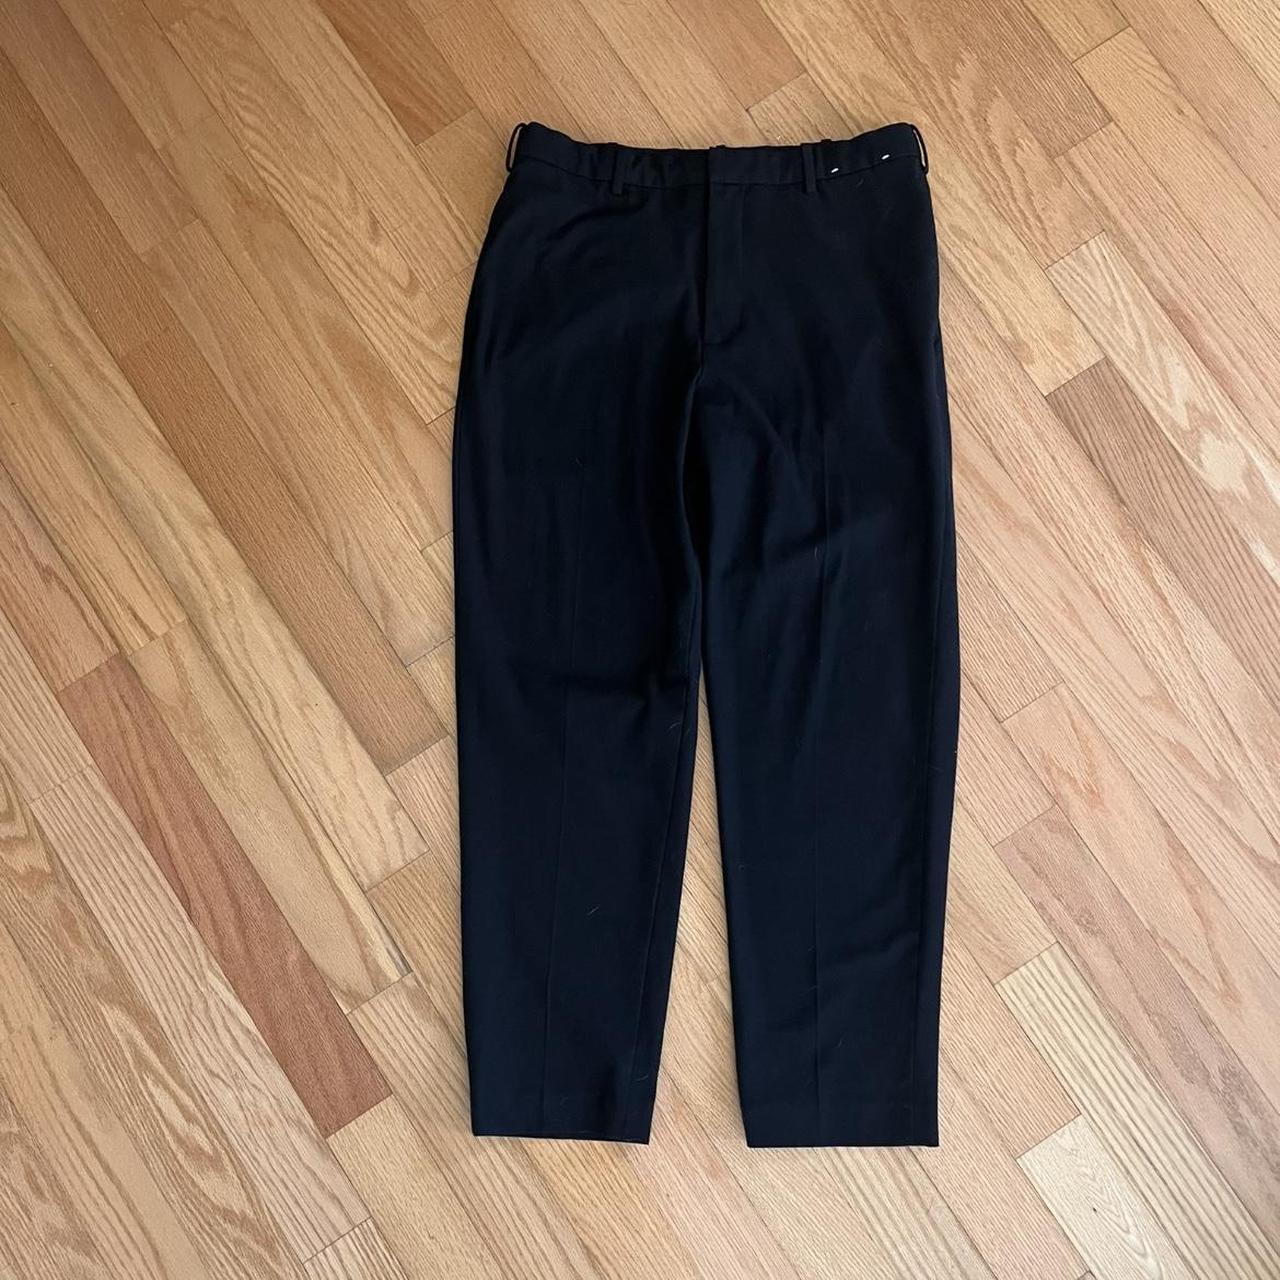 Uniqlo suit pants style Size L men waist 33-36 - Depop